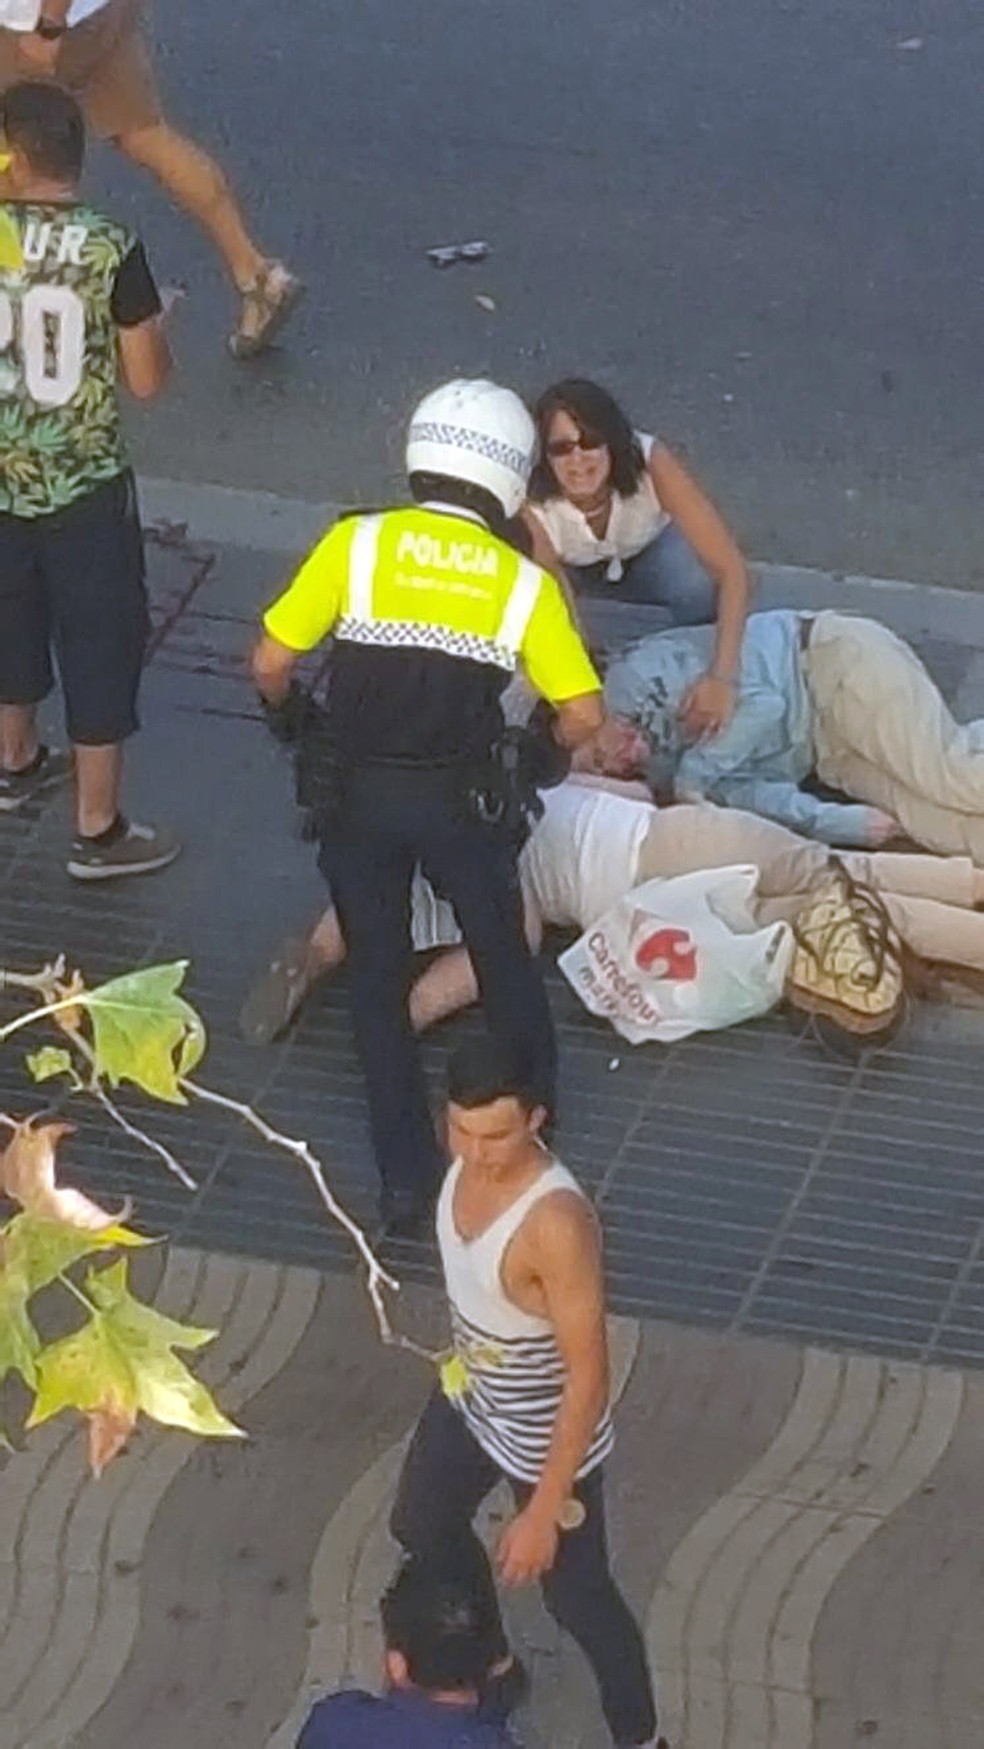 Policial socorre vítimas de atropelamento em ataque terrorista em Barcelona, na Espanha  (Foto: Giselle Loots/ REUTERS)